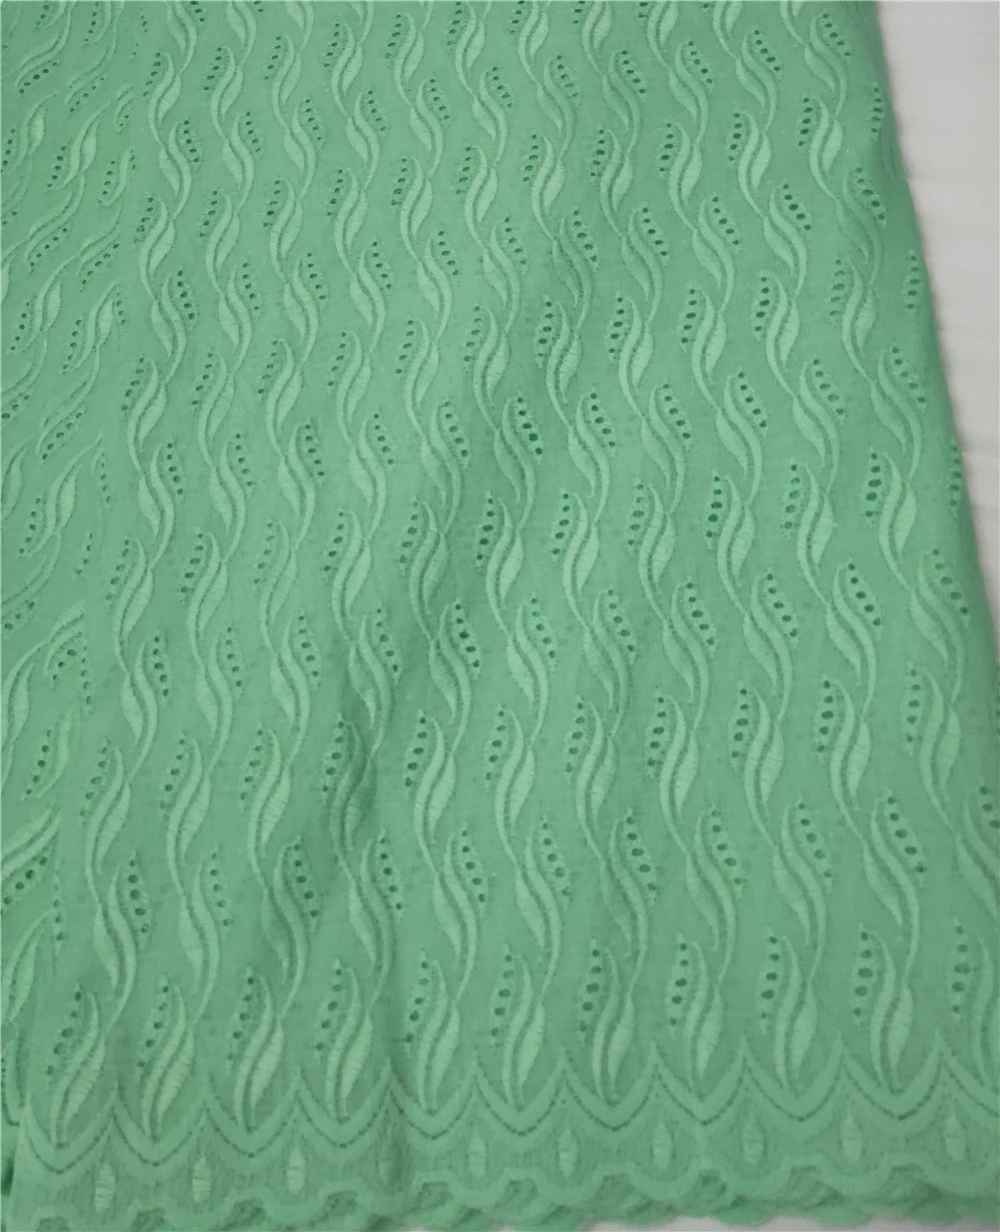 Выдолбленный сладкий цвет сухой кружевной ткани однотонная вышитая вуаль кружевной ткани 5 ярдов высокого качества для женской одежды XXD02